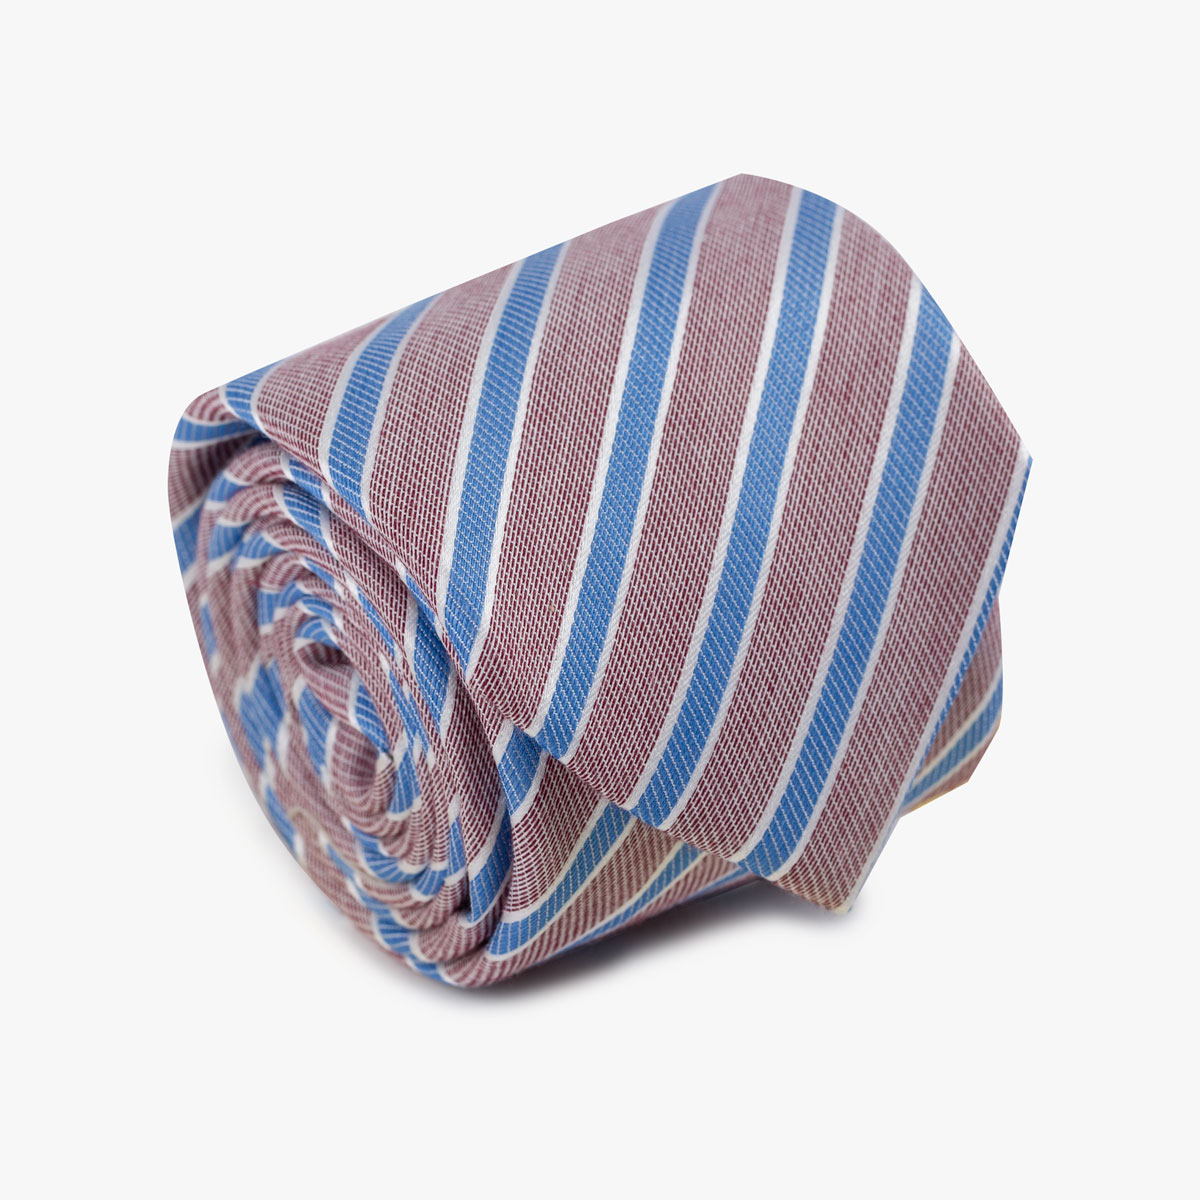 Aufgerollte gestreifte Krawatte in rot und blau